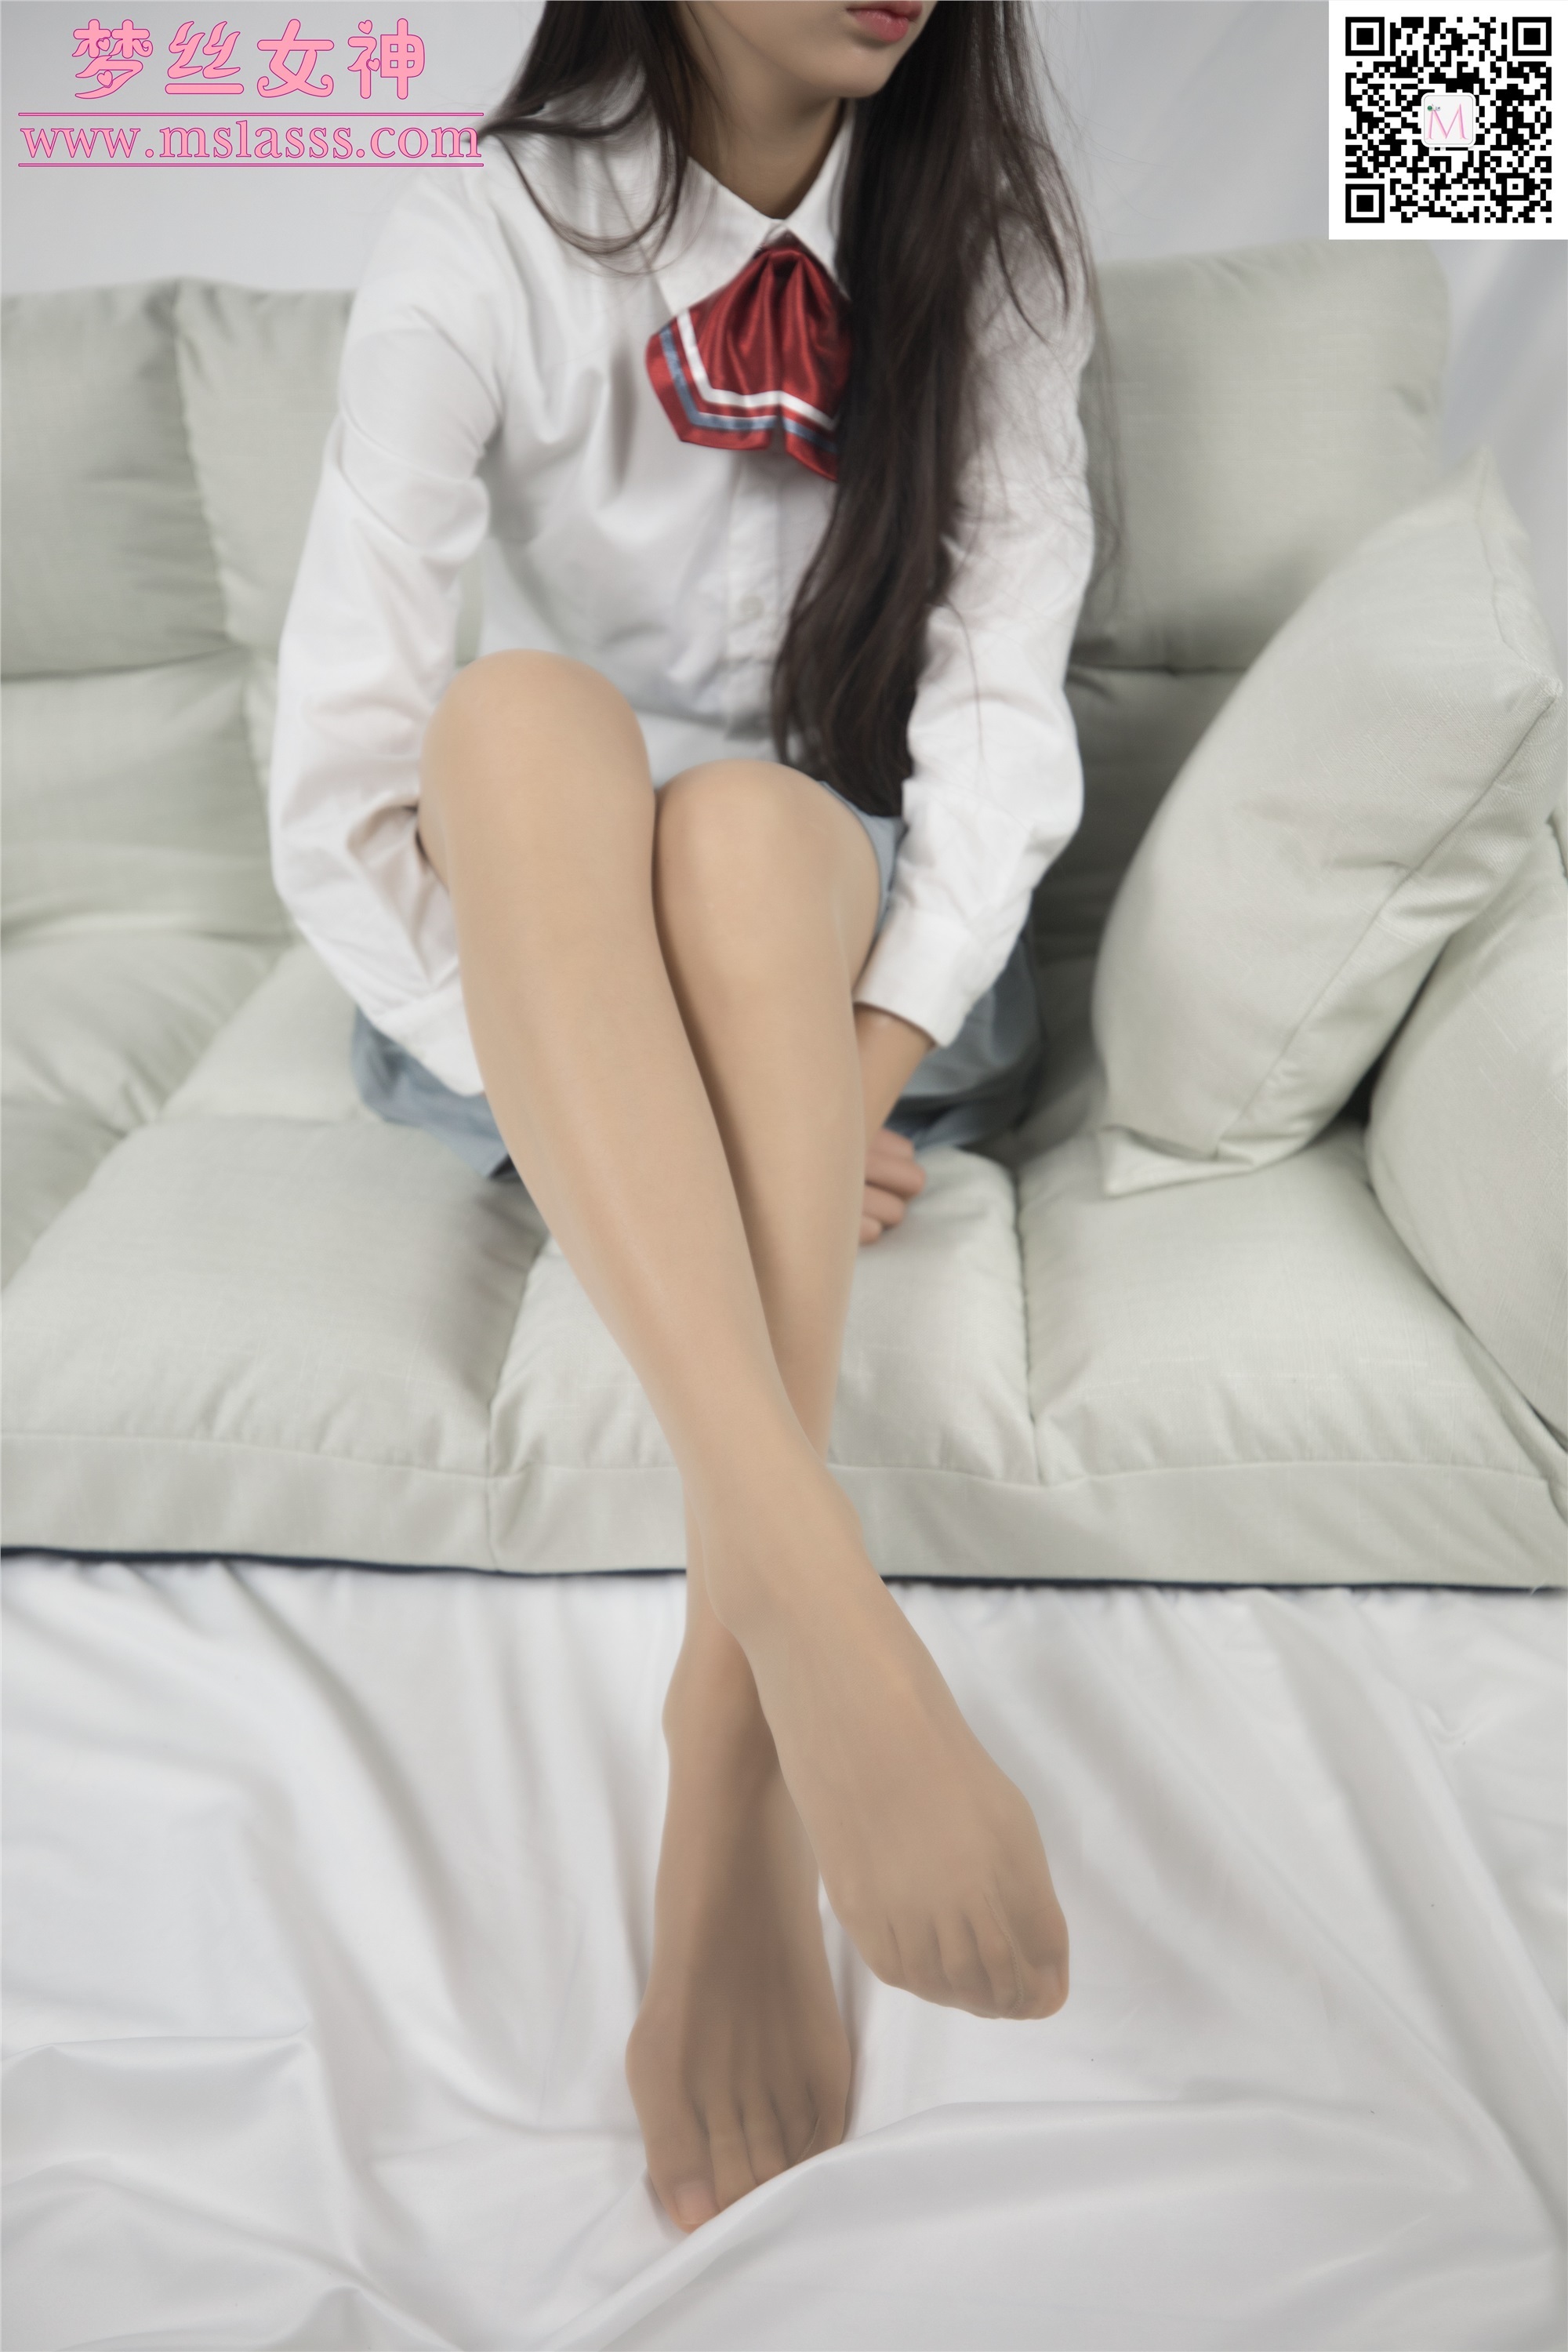 Mslass dream silk goddess 2020-01-21 vol.093 the big long legs of Xiaochi xiaojk